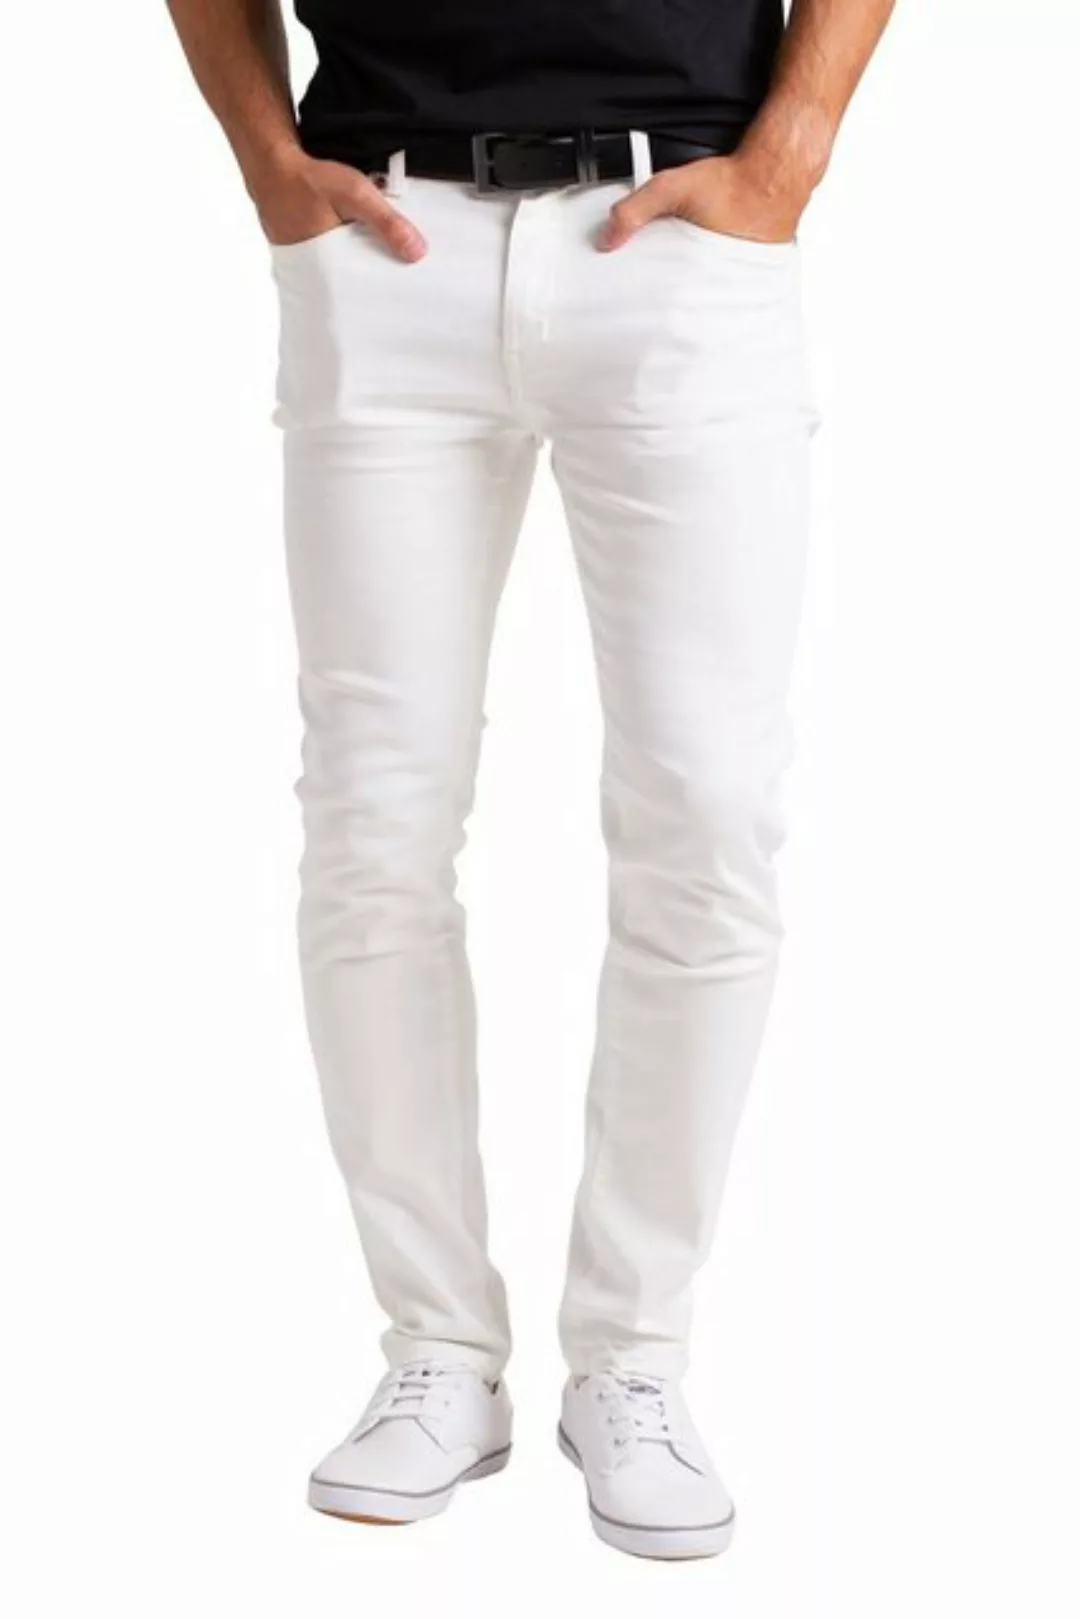 BlauerHafen Slim-fit-Jeans Herren Stretch Denim Jeans Schlanke Passform str günstig online kaufen